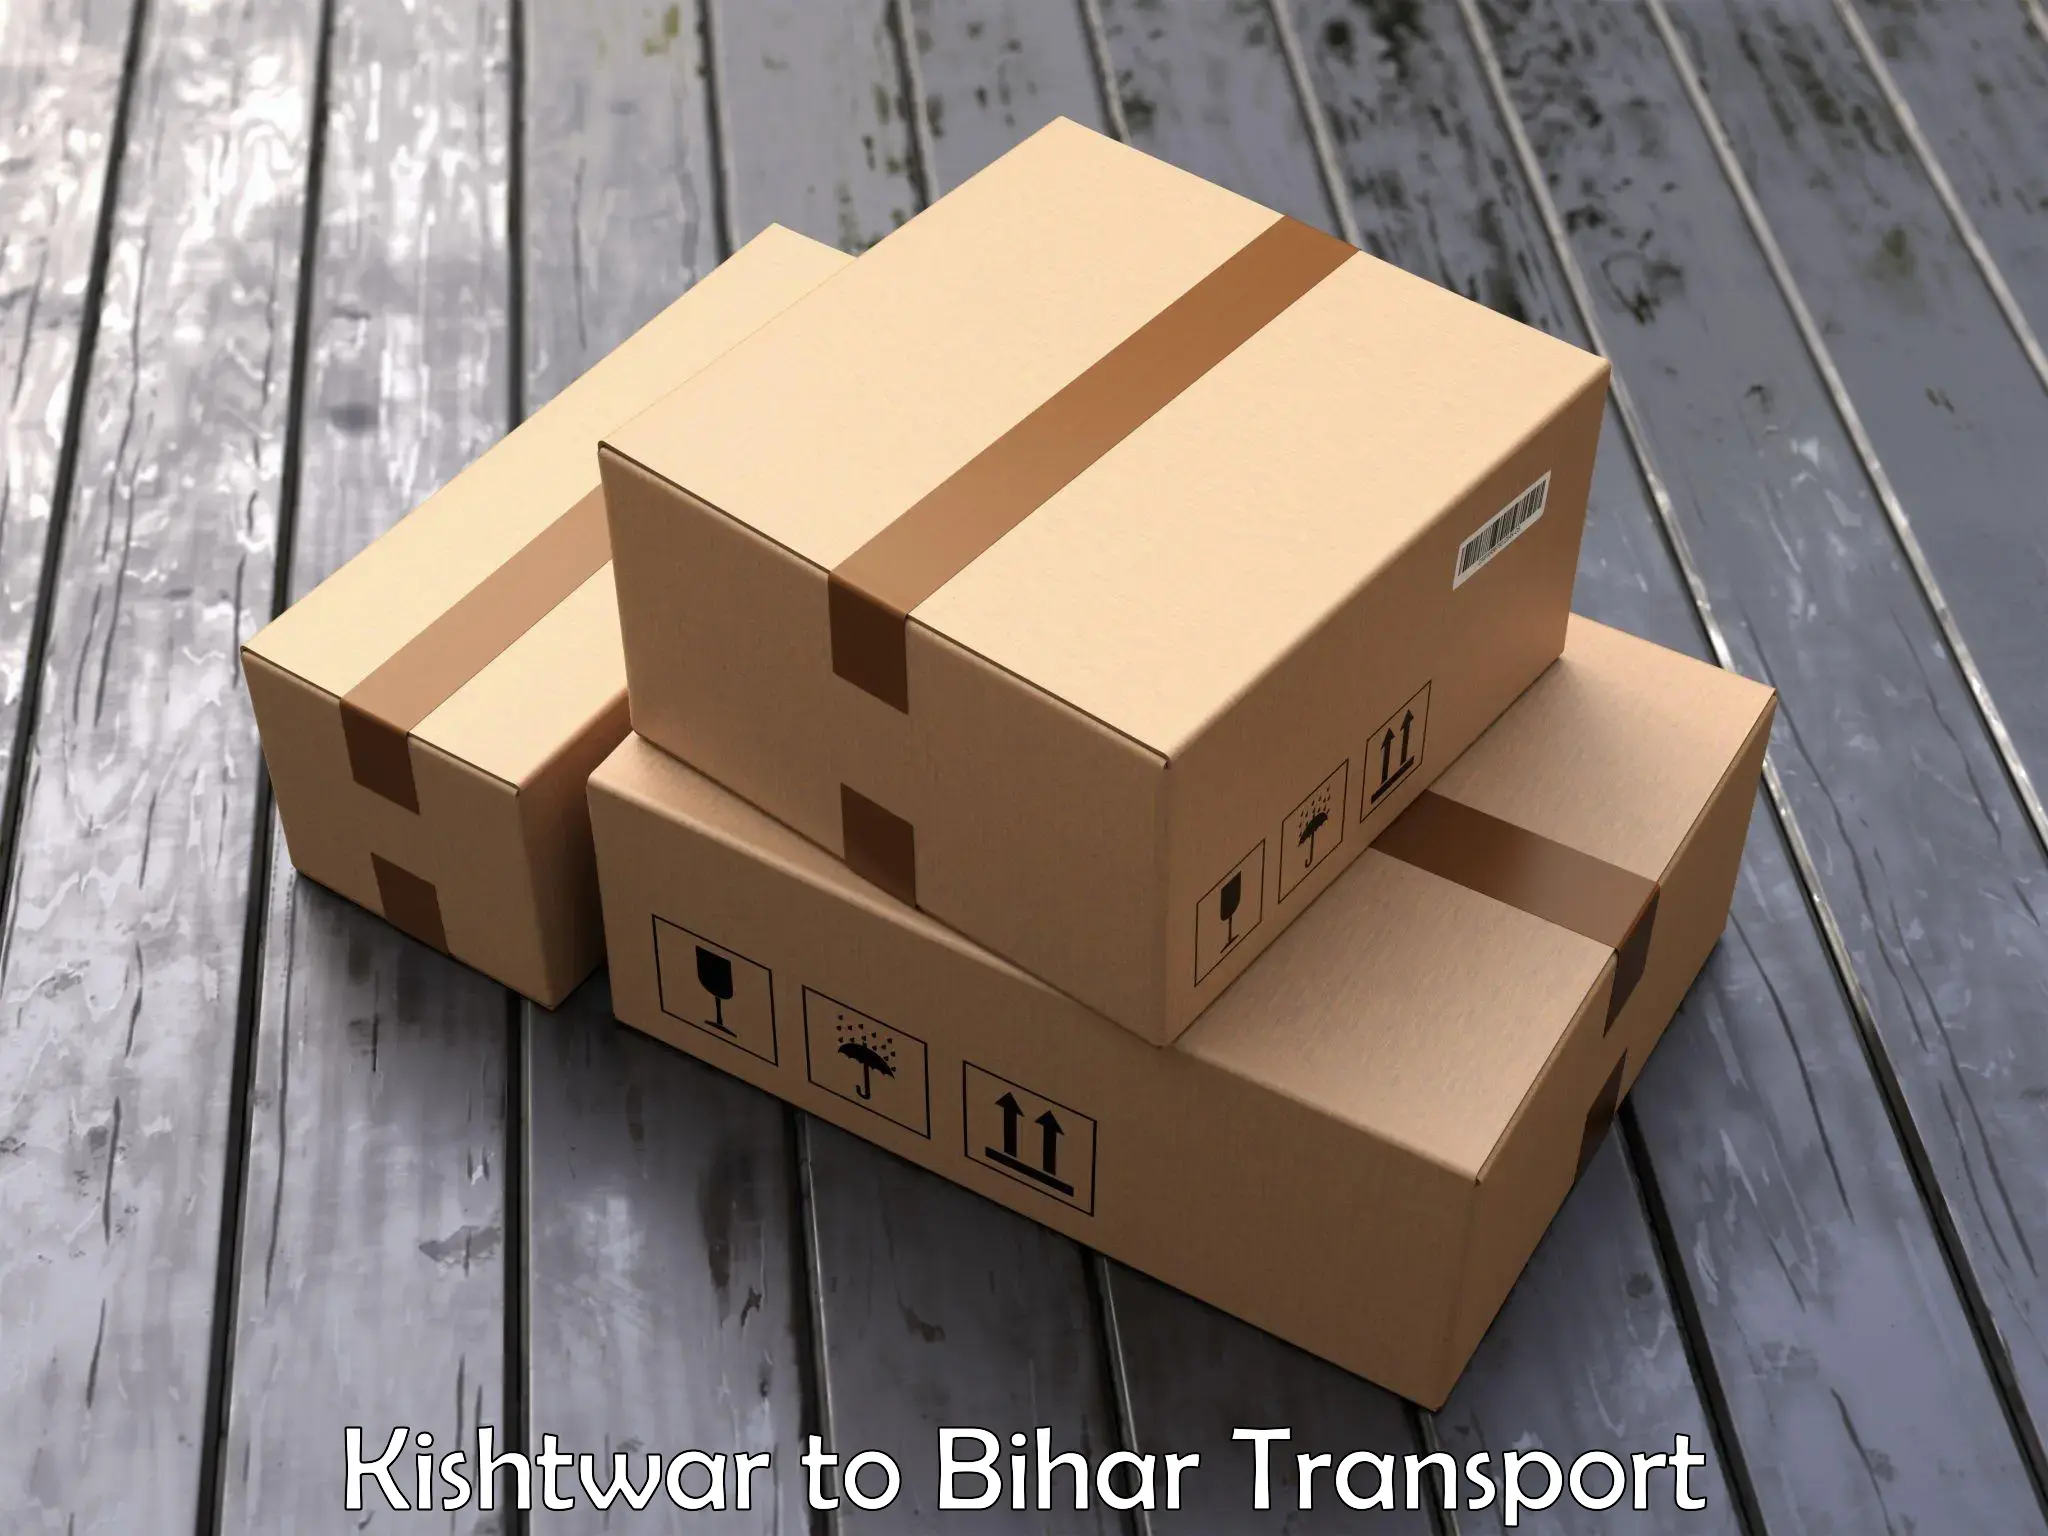 Bike shipping service Kishtwar to Bankipore